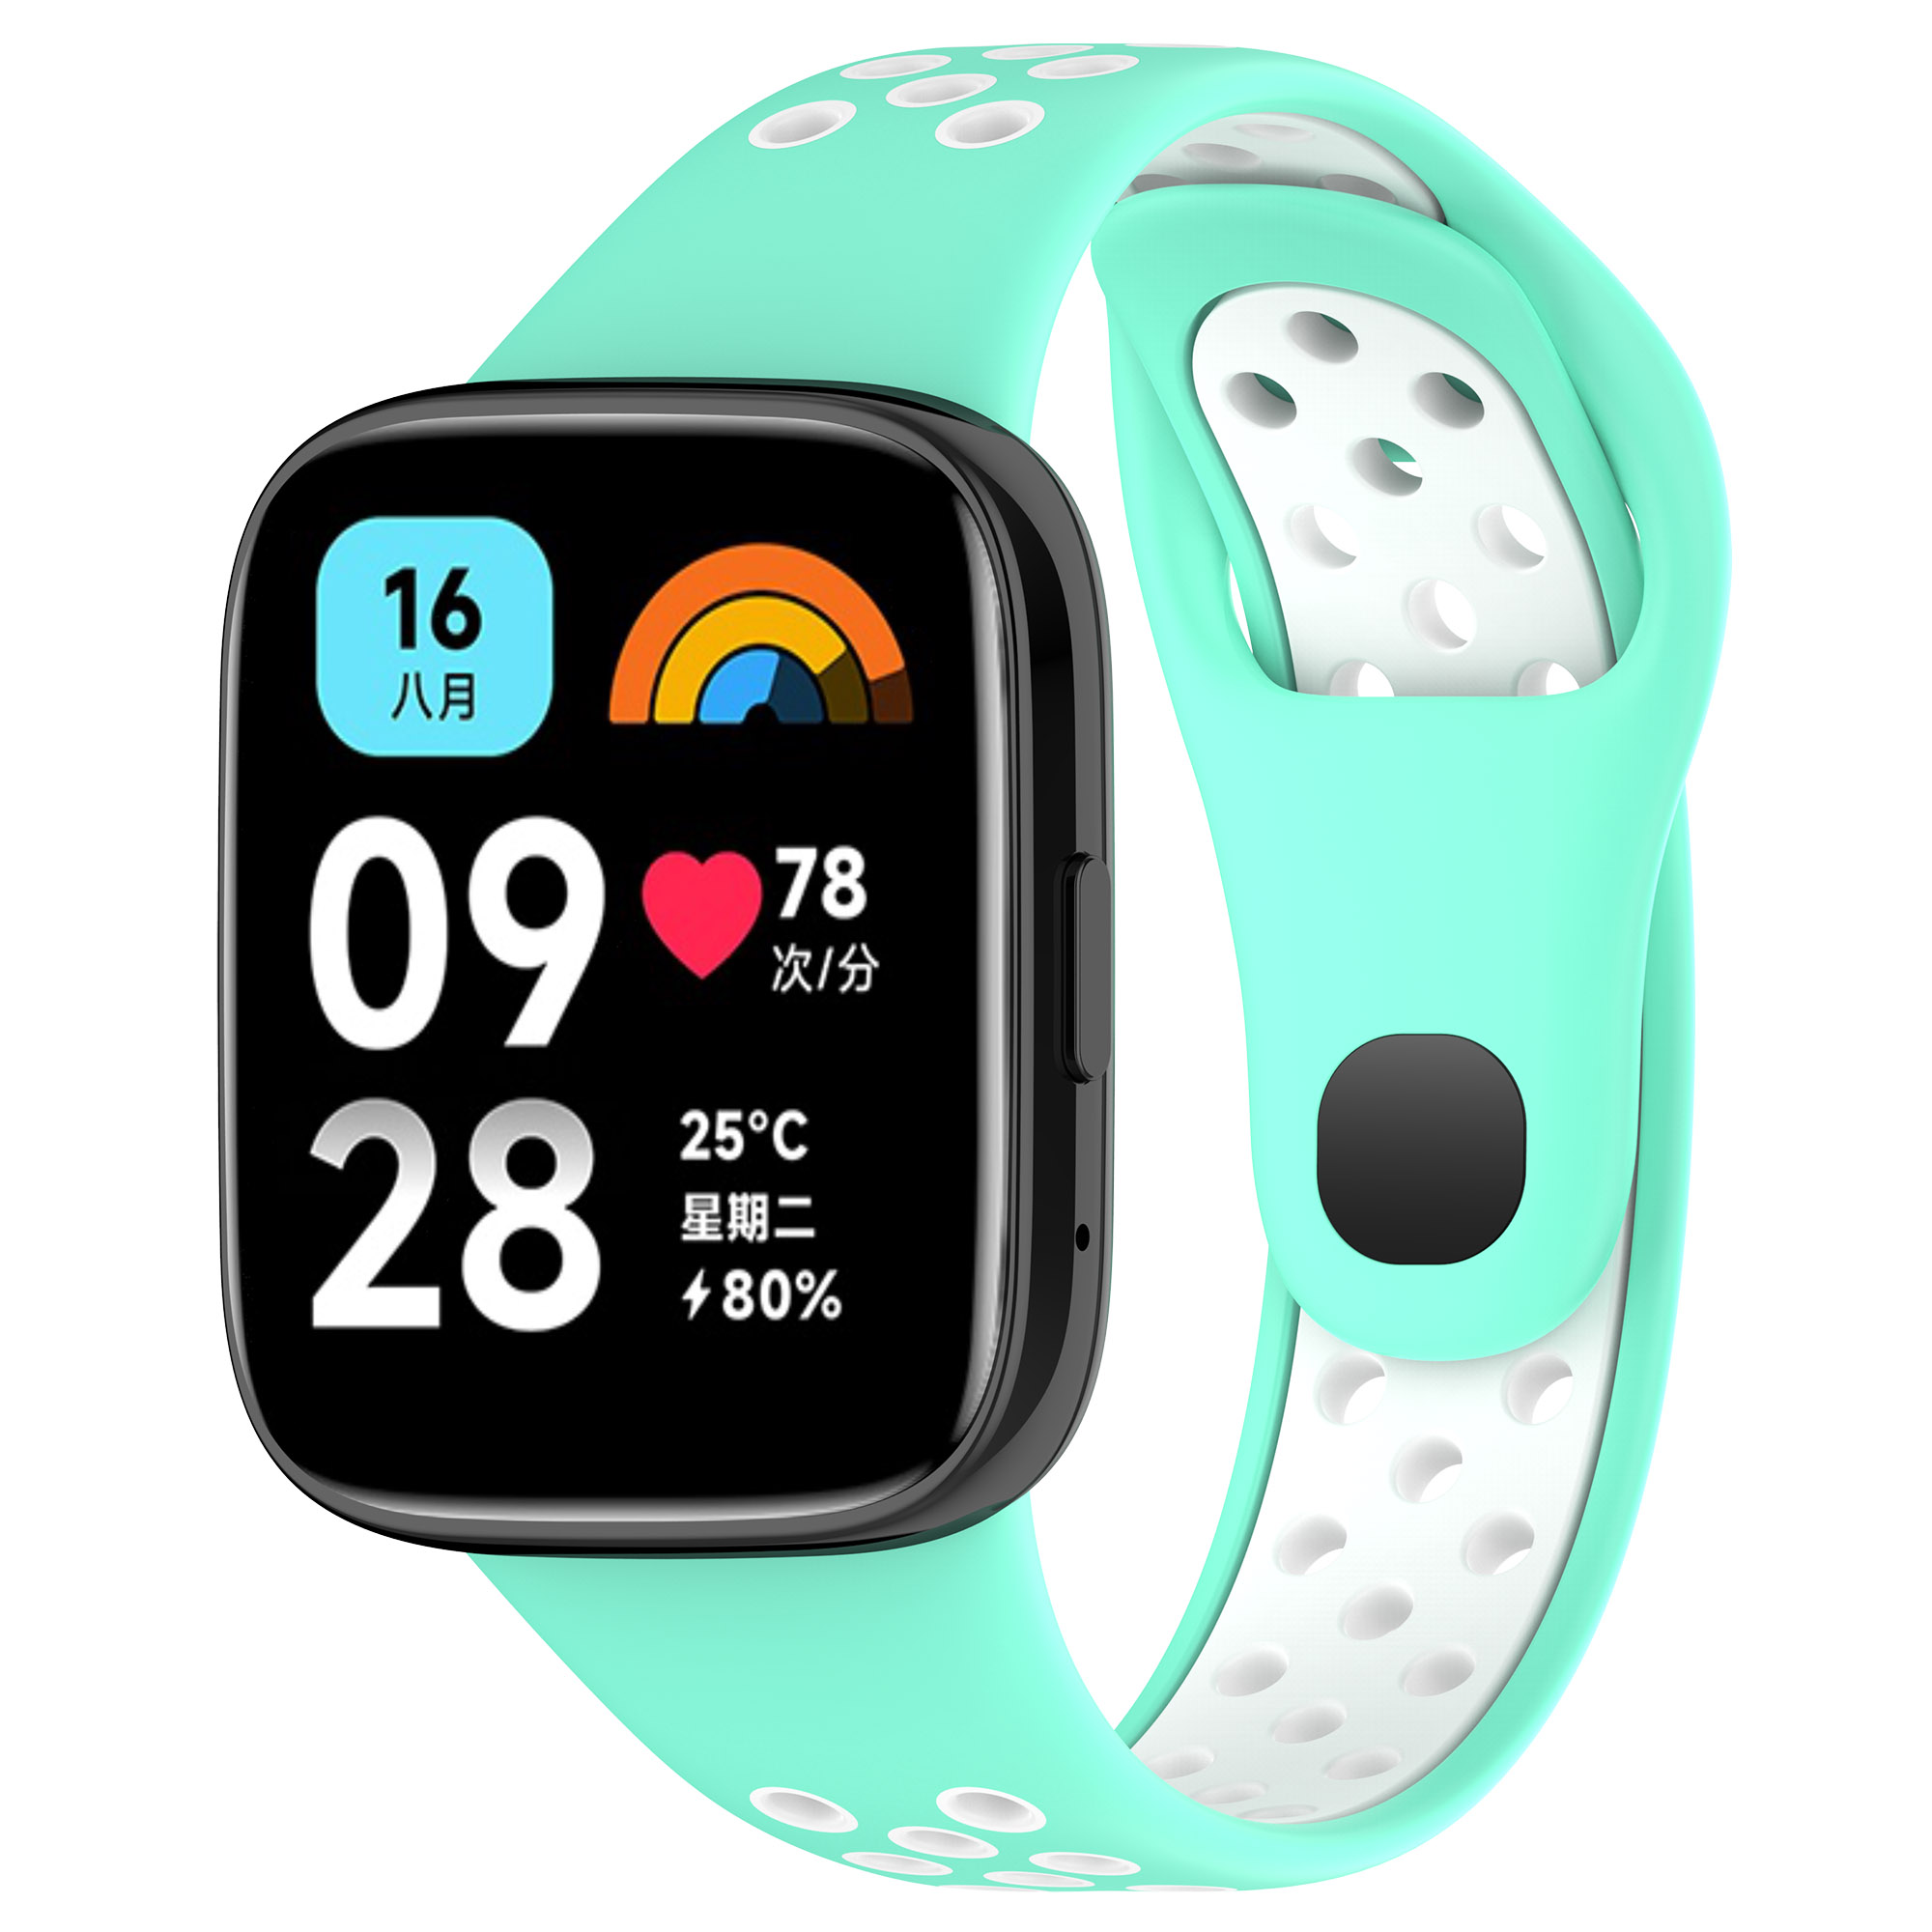 Двухцветный силиконовый ремешок для Redmi Watch 3 Lite, Watch 3 Active, чайно-белый